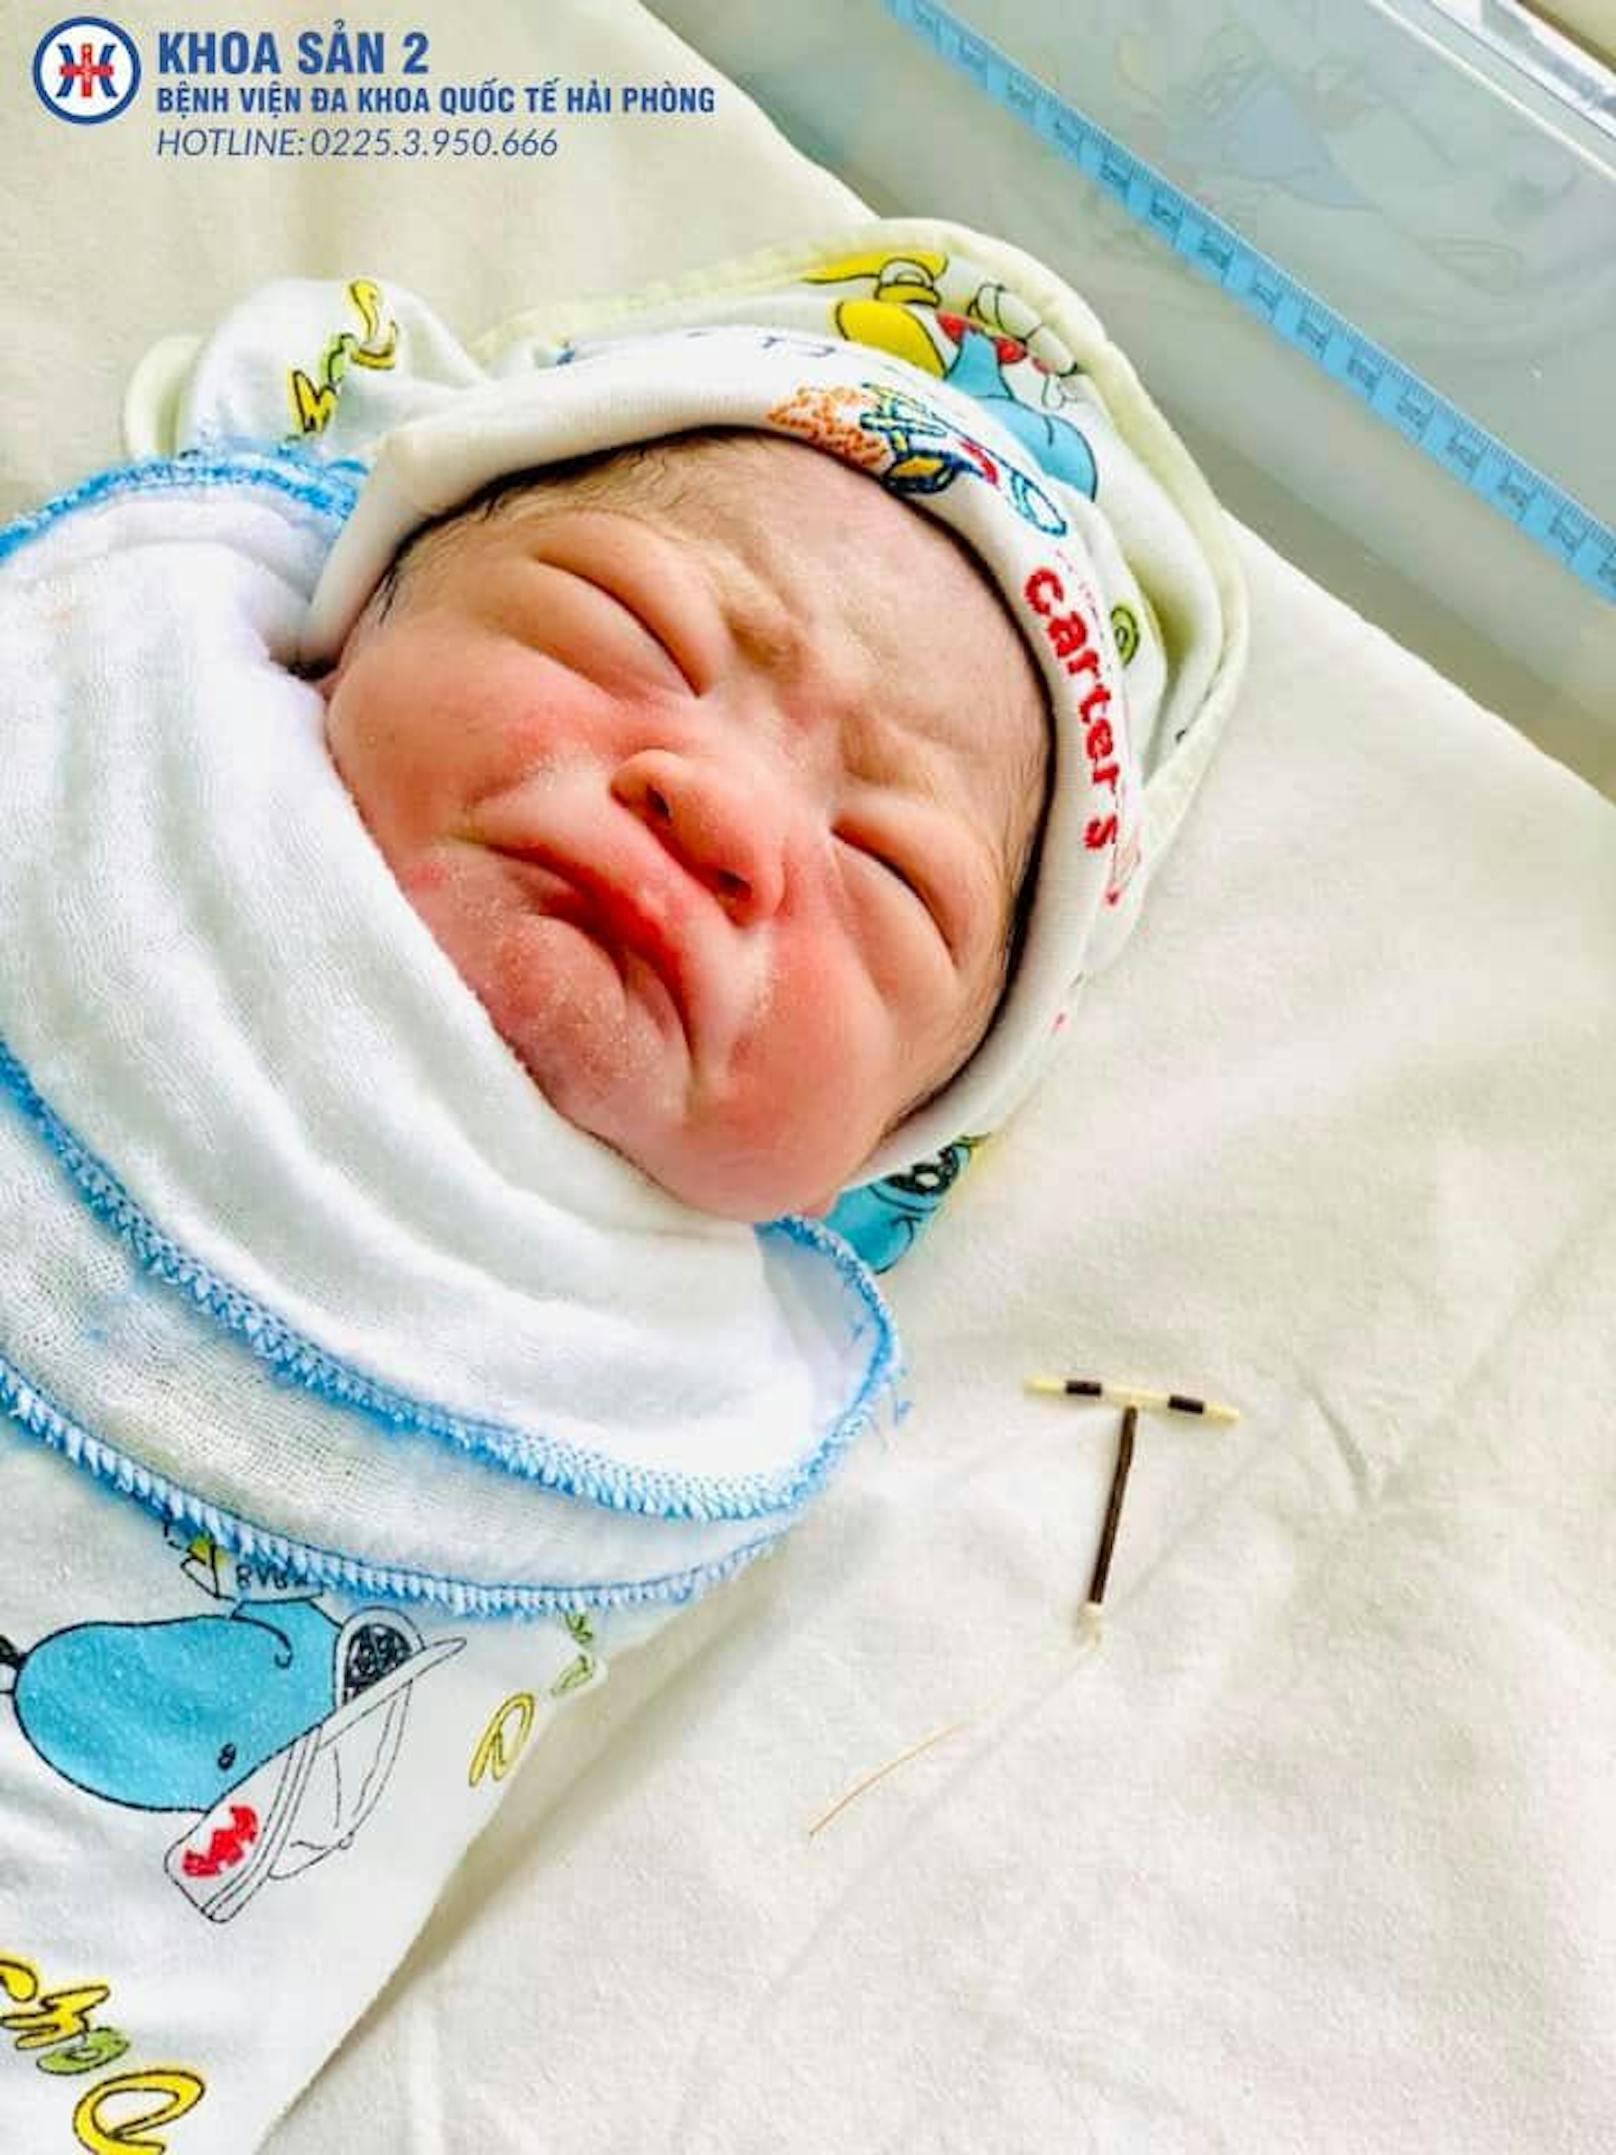 Gegen alle Widrigkeiten: In Vietnam kam am 30. Juni 2020 ein Baby mit einer "Spirale" in der Hand zur Welt. Eigentlich hätte das Verhütungsmittel eine Schwangerschaft verhindern sollen.